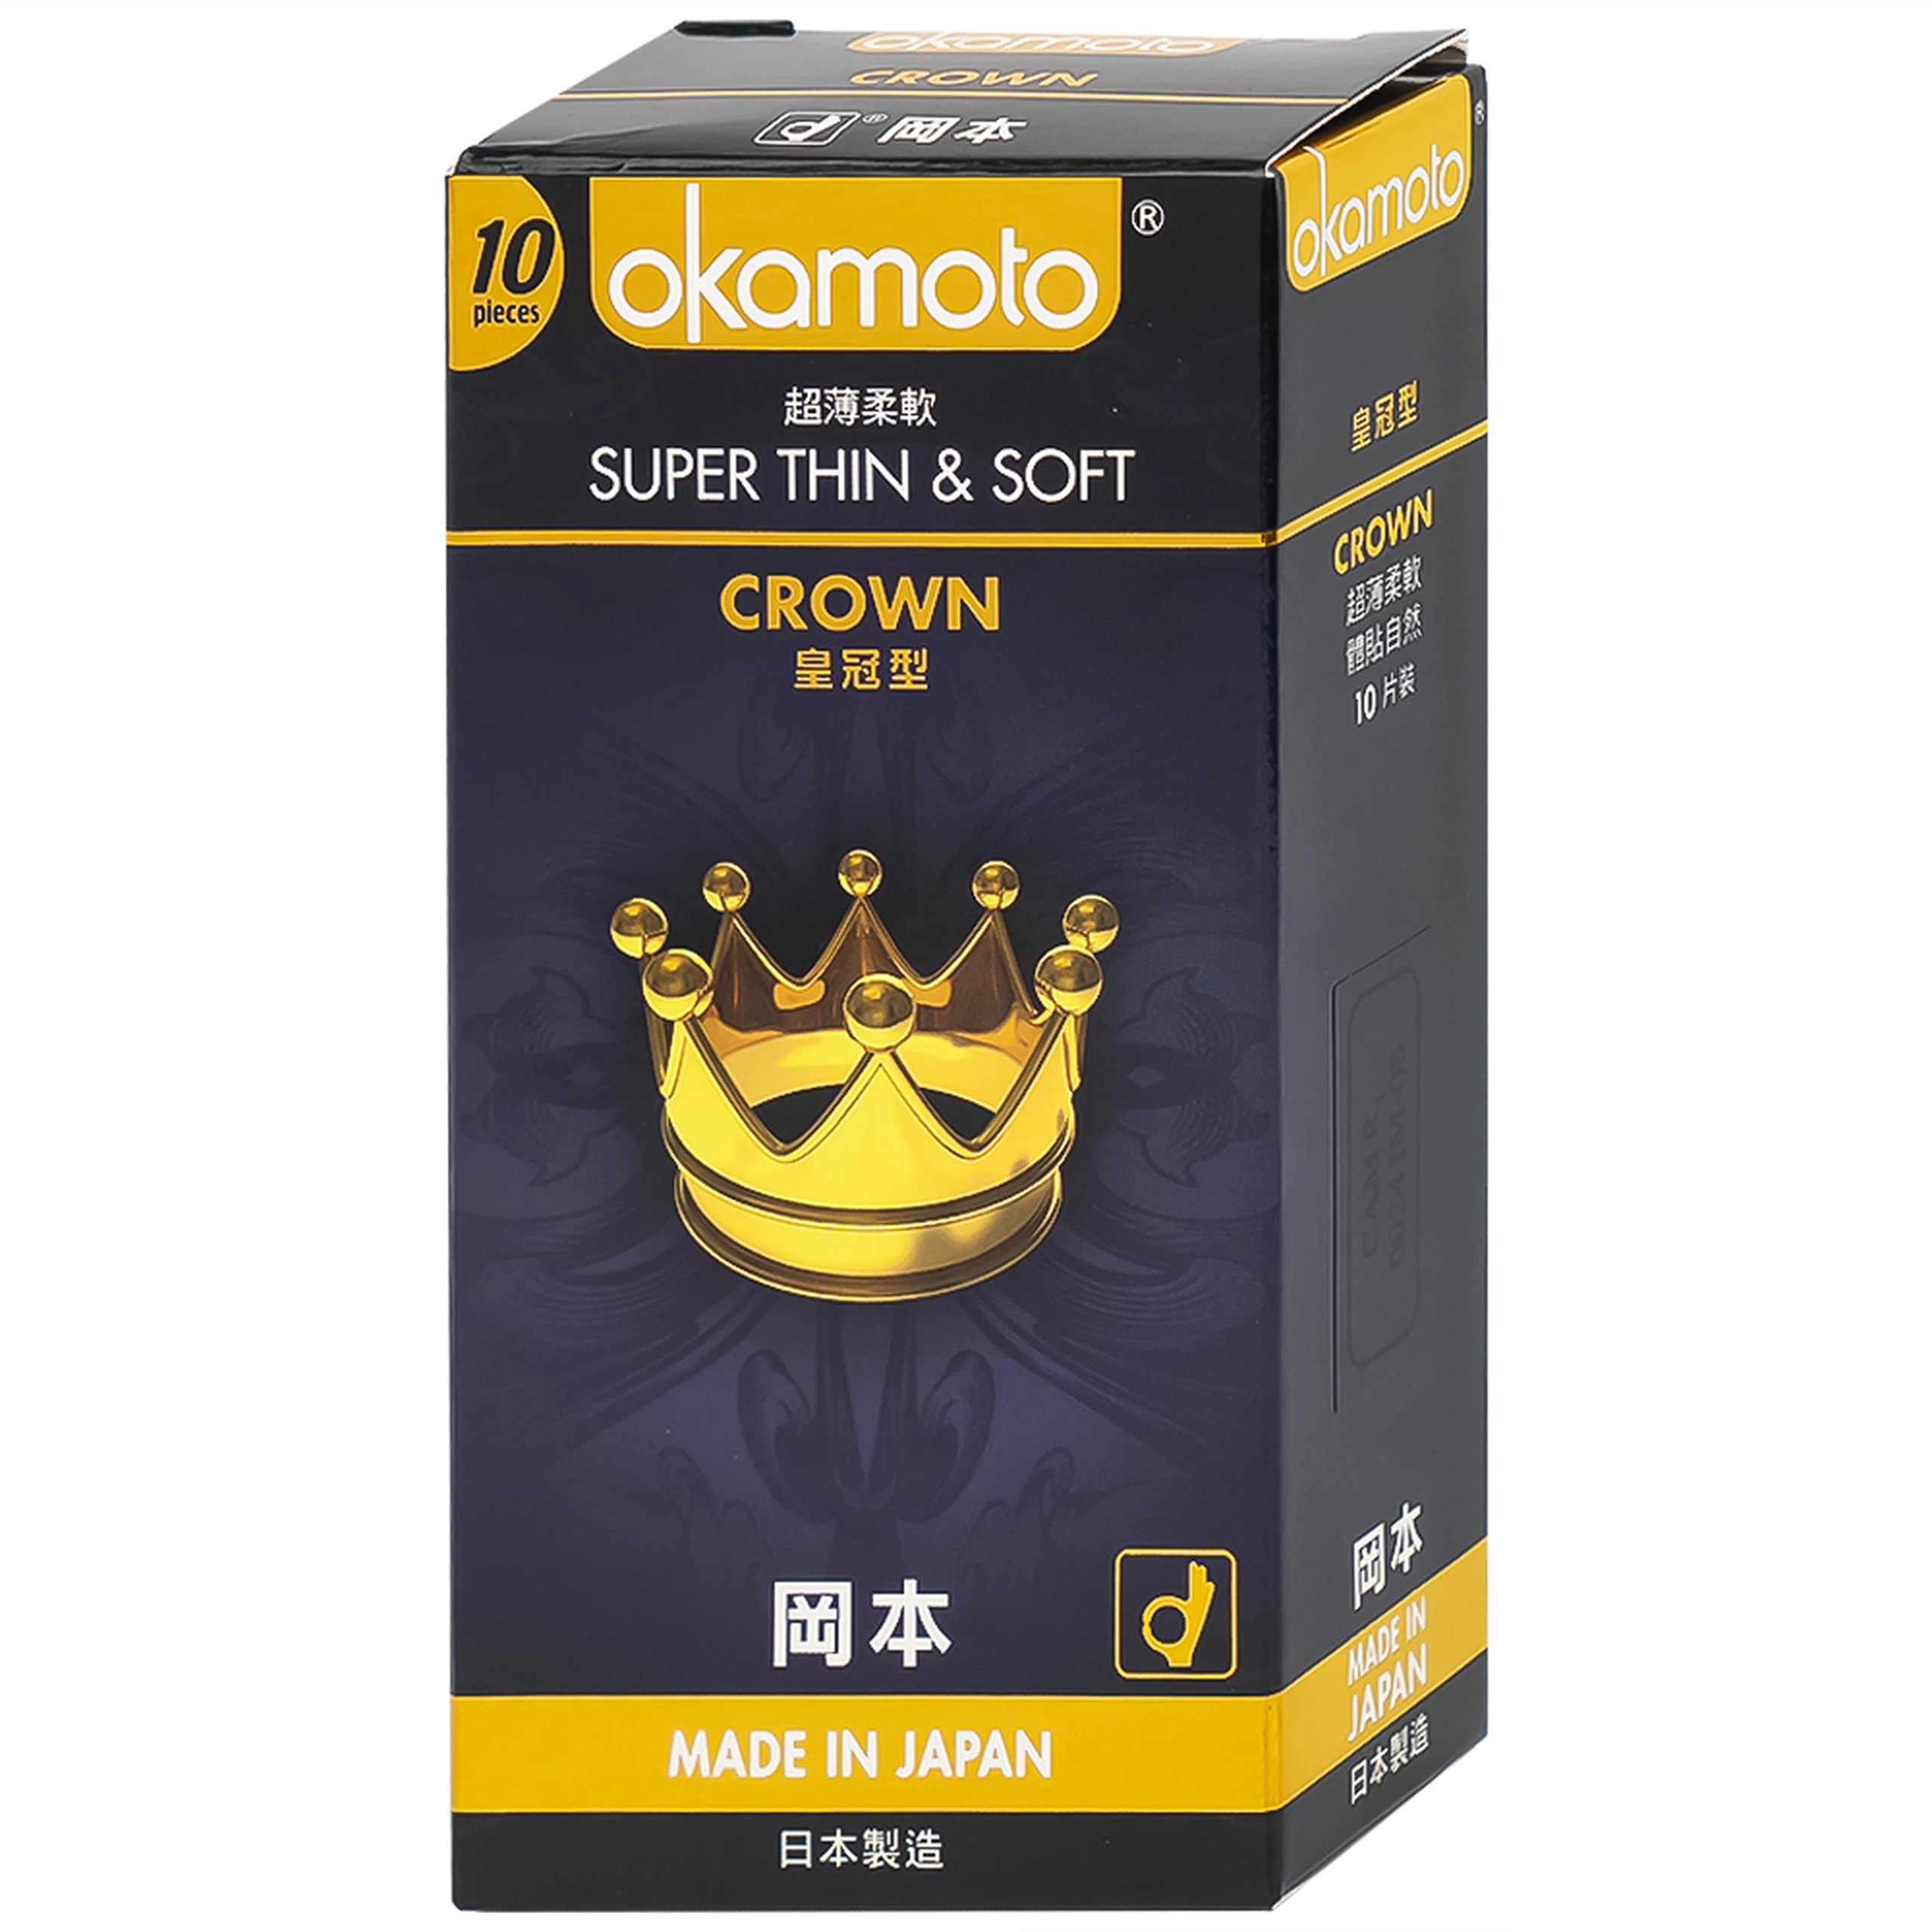 Bao cao su Okamoto Crown kích cỡ nhỏ, siêu mỏng, mềm mại dùng để phòng tránh thai và ngăn ngừa HIV (10 cái)